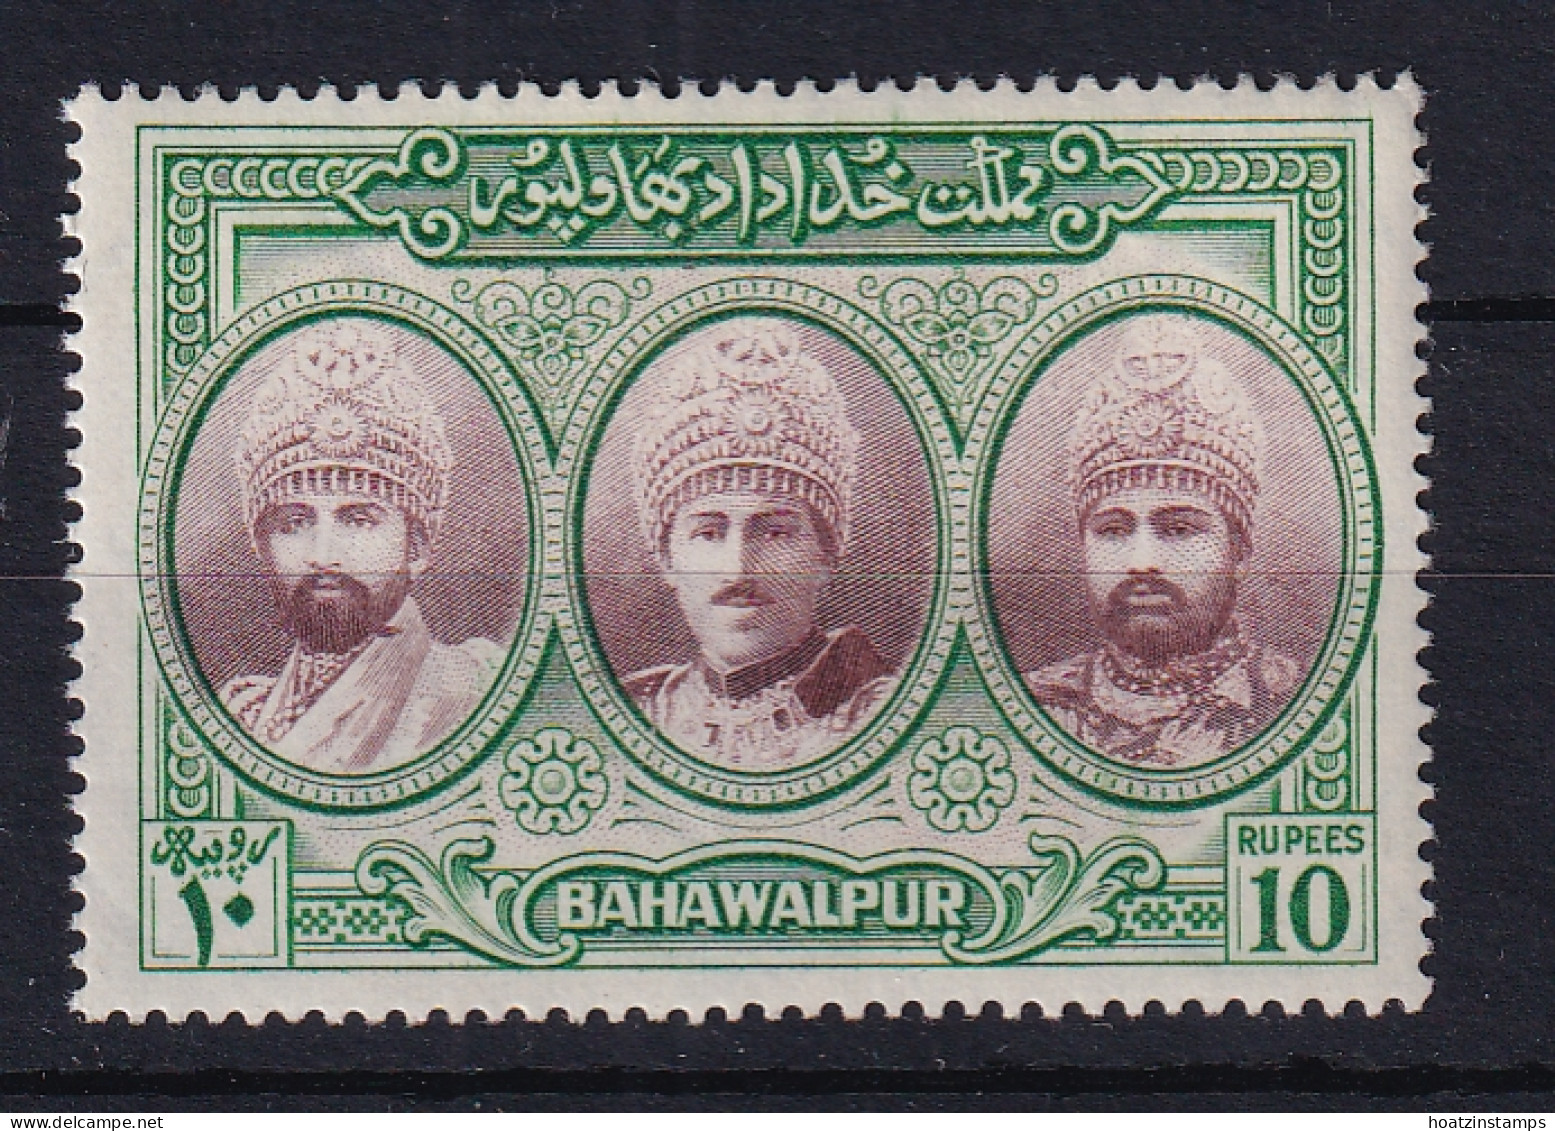 Bahawalpur: 1948   Three Generations Of Rulers   SG32     10R     MNH - Bahawalpur